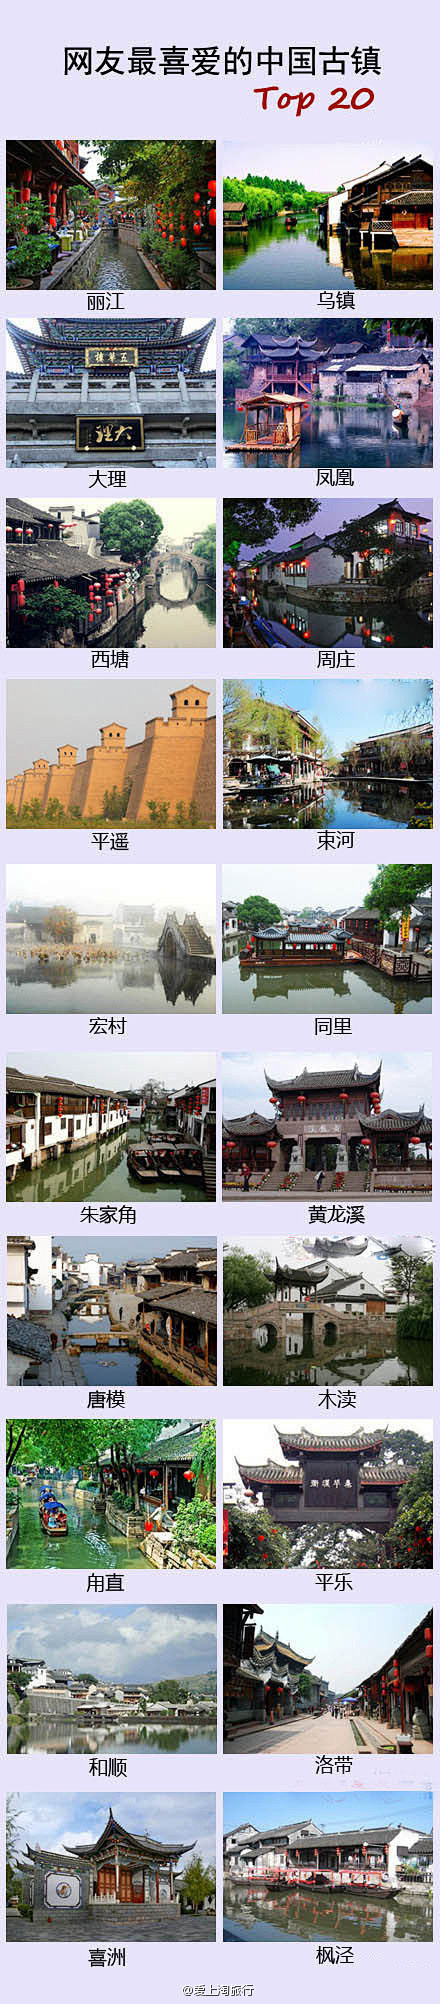 中国20名古镇